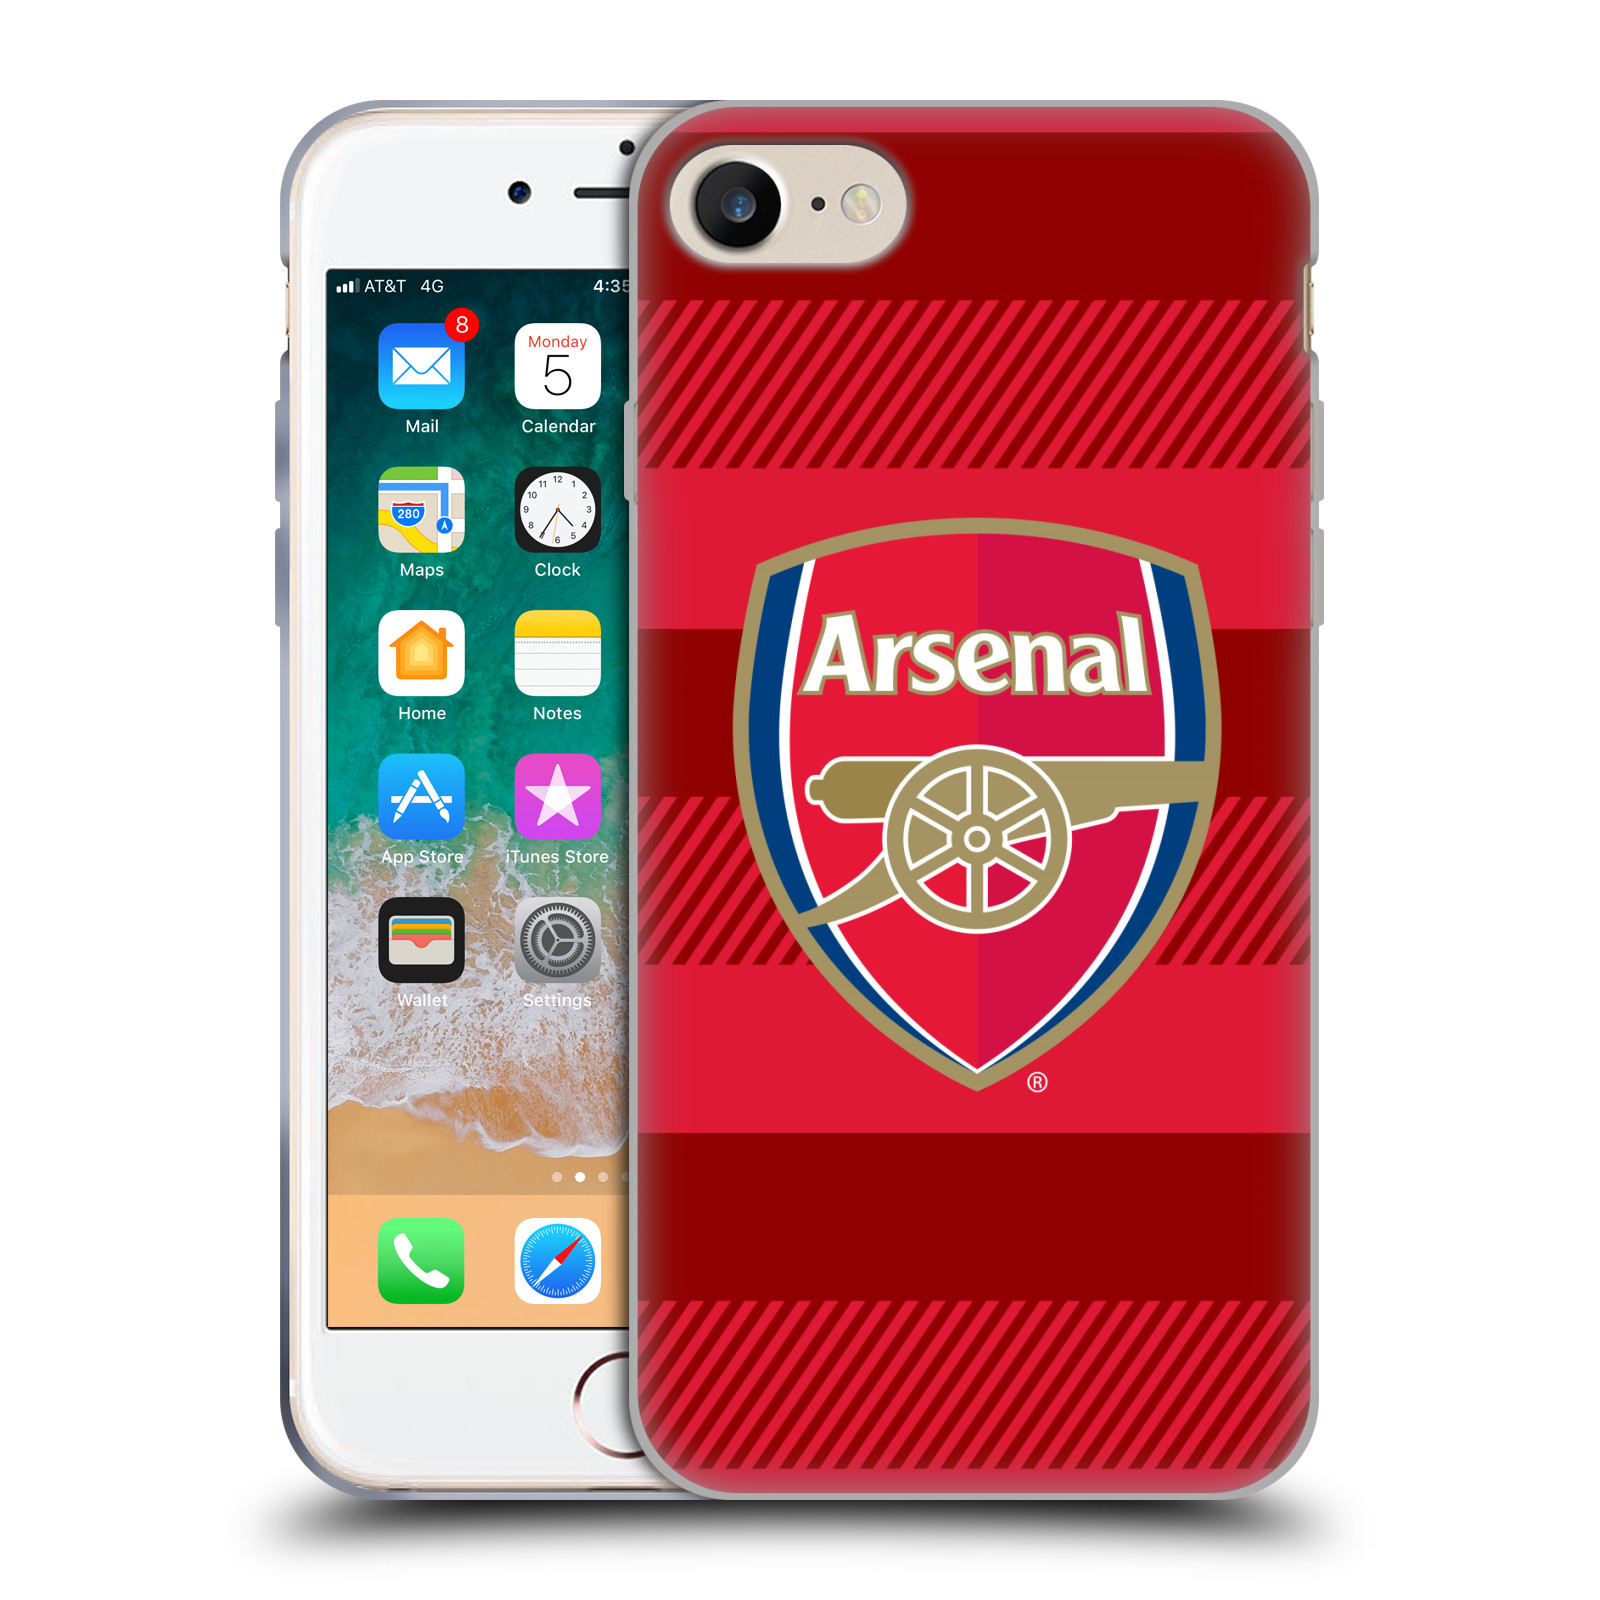 Silikonové pouzdro na mobil Apple iPhone 7 - Head Case - Arsenal FC - Logo s pruhy (Silikonový kryt či obal na mobilní telefon s motivem klubu Arsenal FC - Logo s pruhy pro Apple iPhone 7)